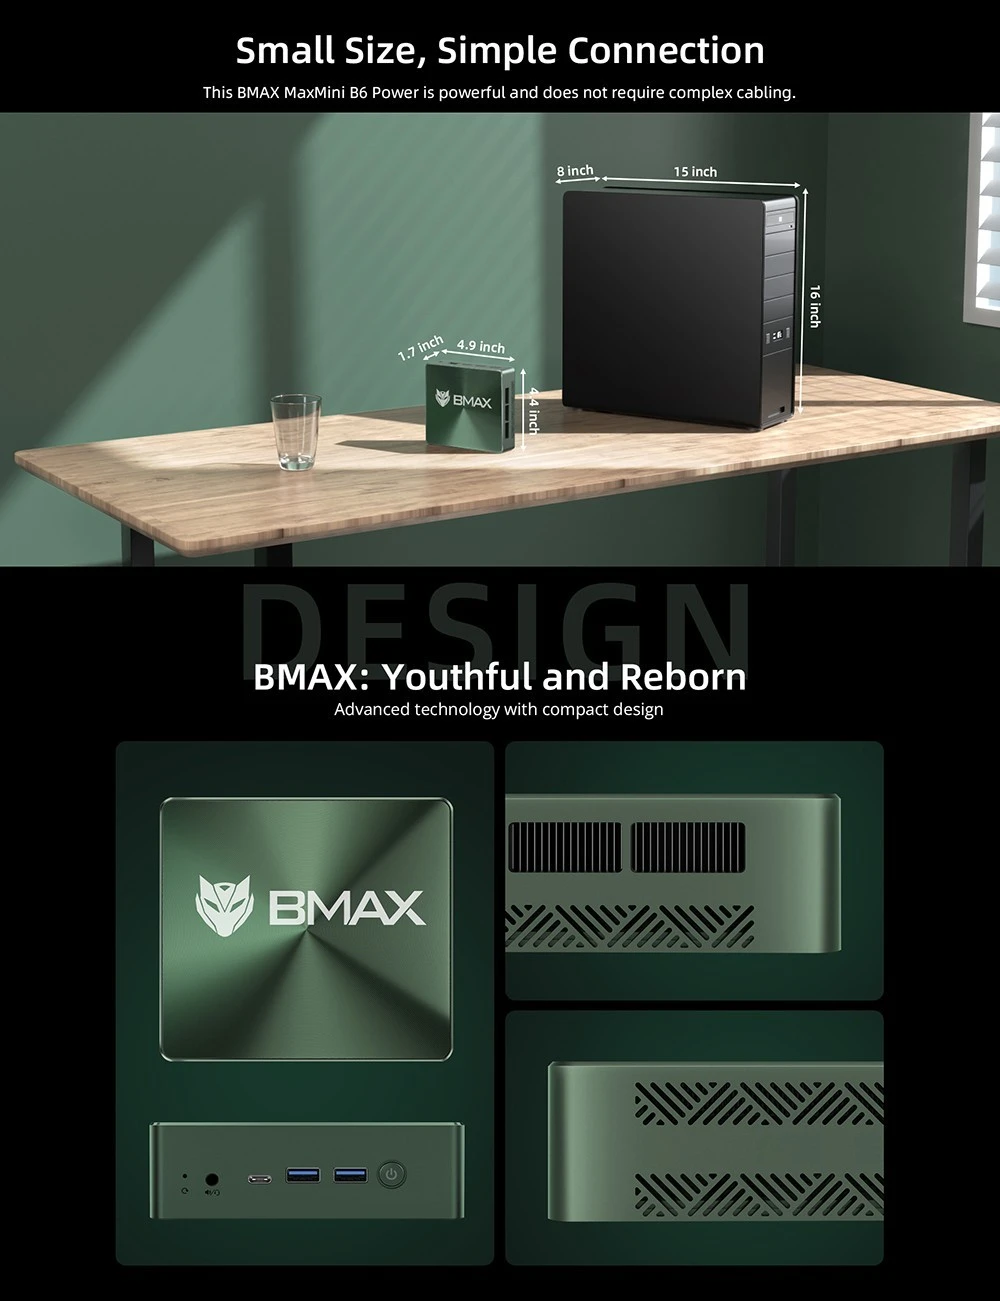 A Bmax legújabb dobása egy erős, mégis szuperolcsó mini PC